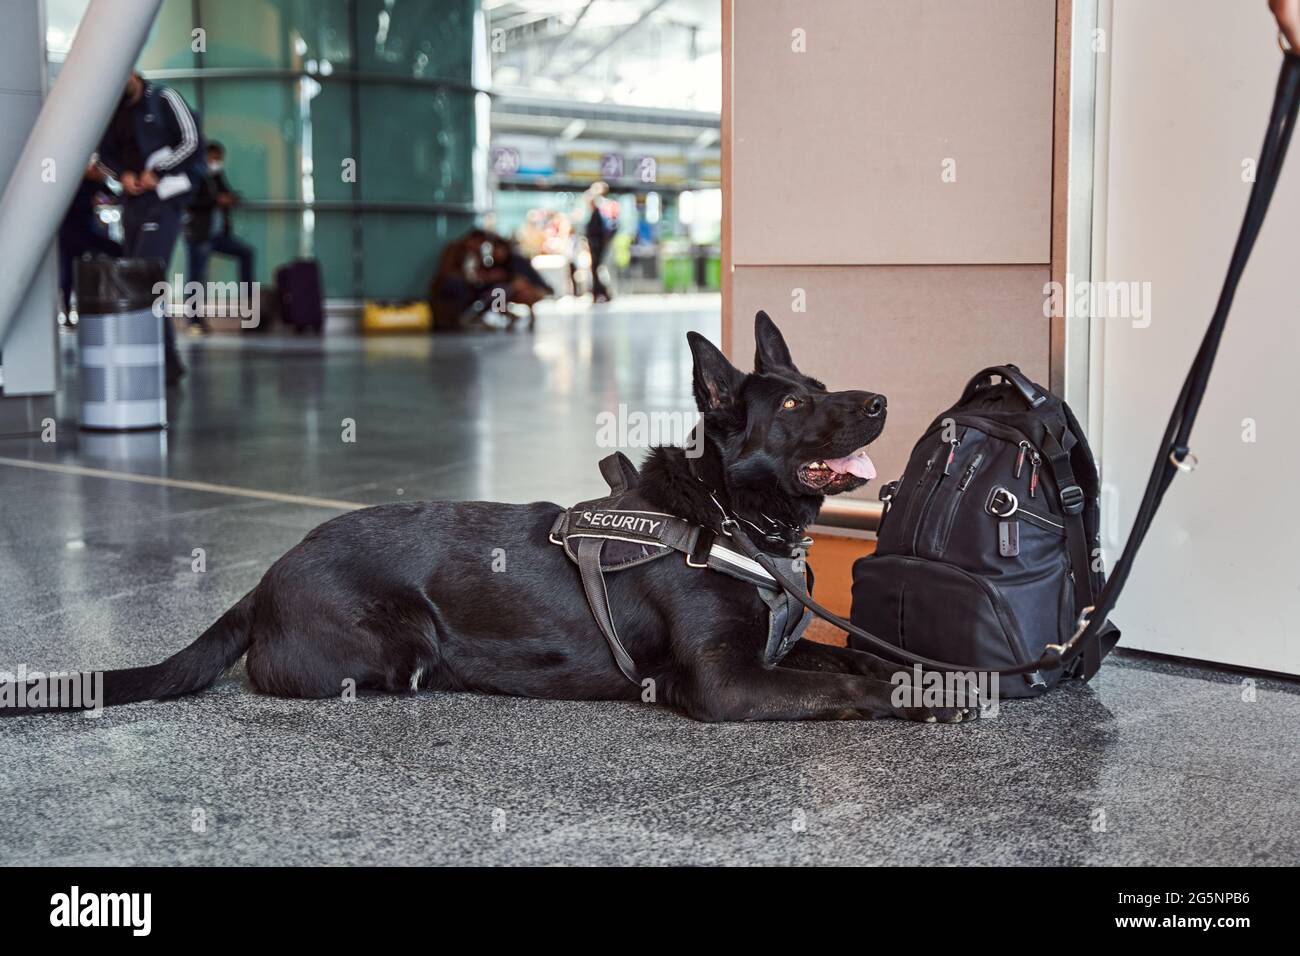 Chien de sécurité de la police reposant sur le sol dans le terminal de l'aéroport Banque D'Images